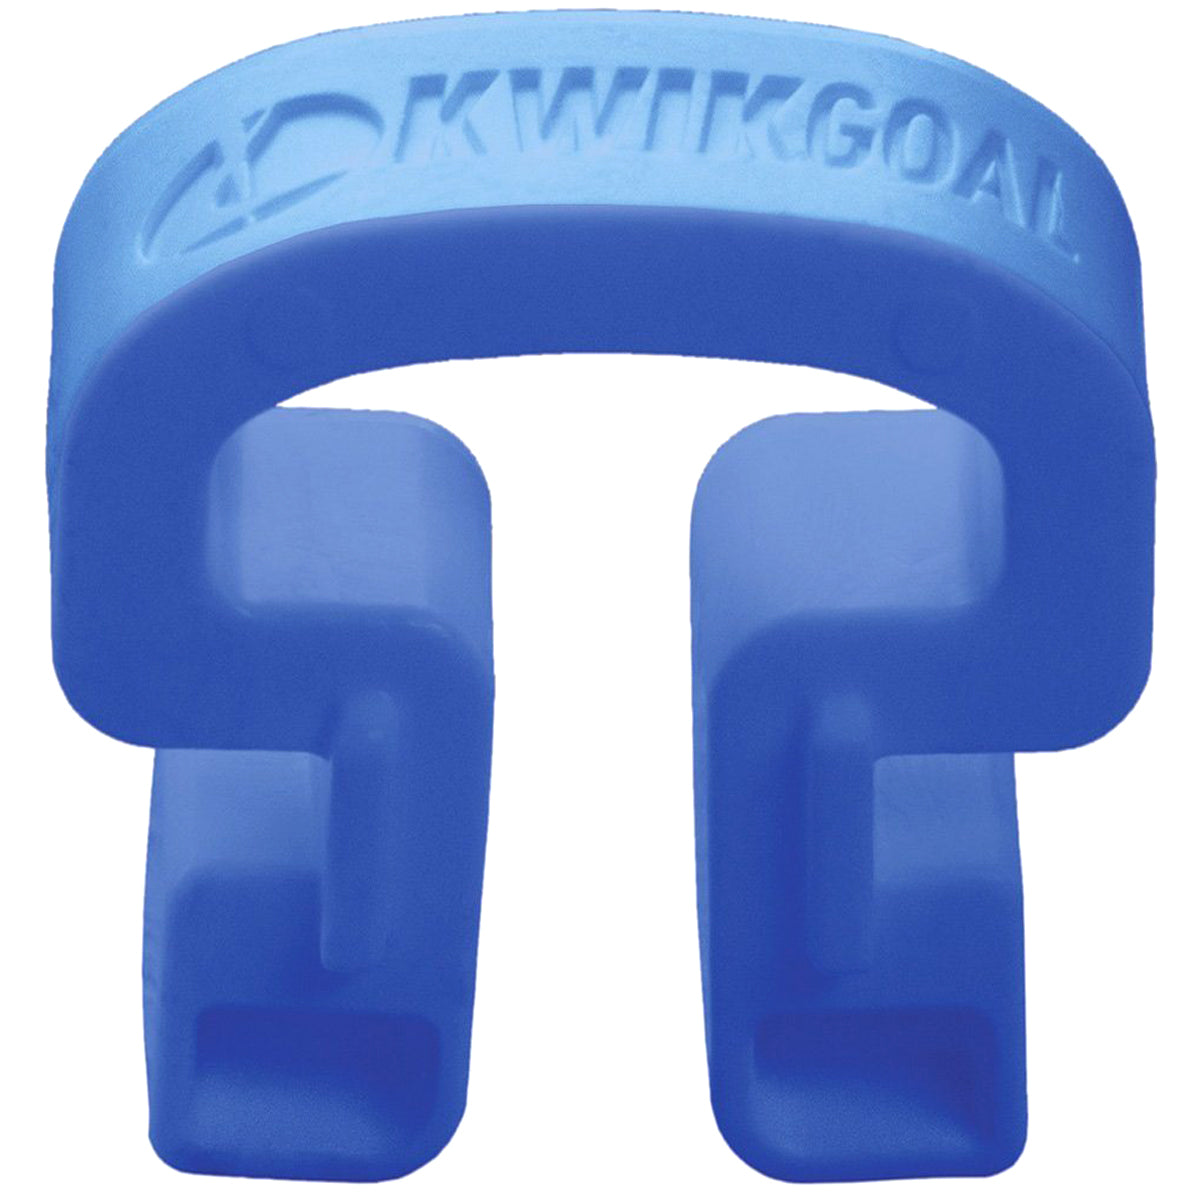 Kwikgoal Kwik Lock Net Clips - 100 Pack | 10B31 Goal accessories Kwikgoal Blue 